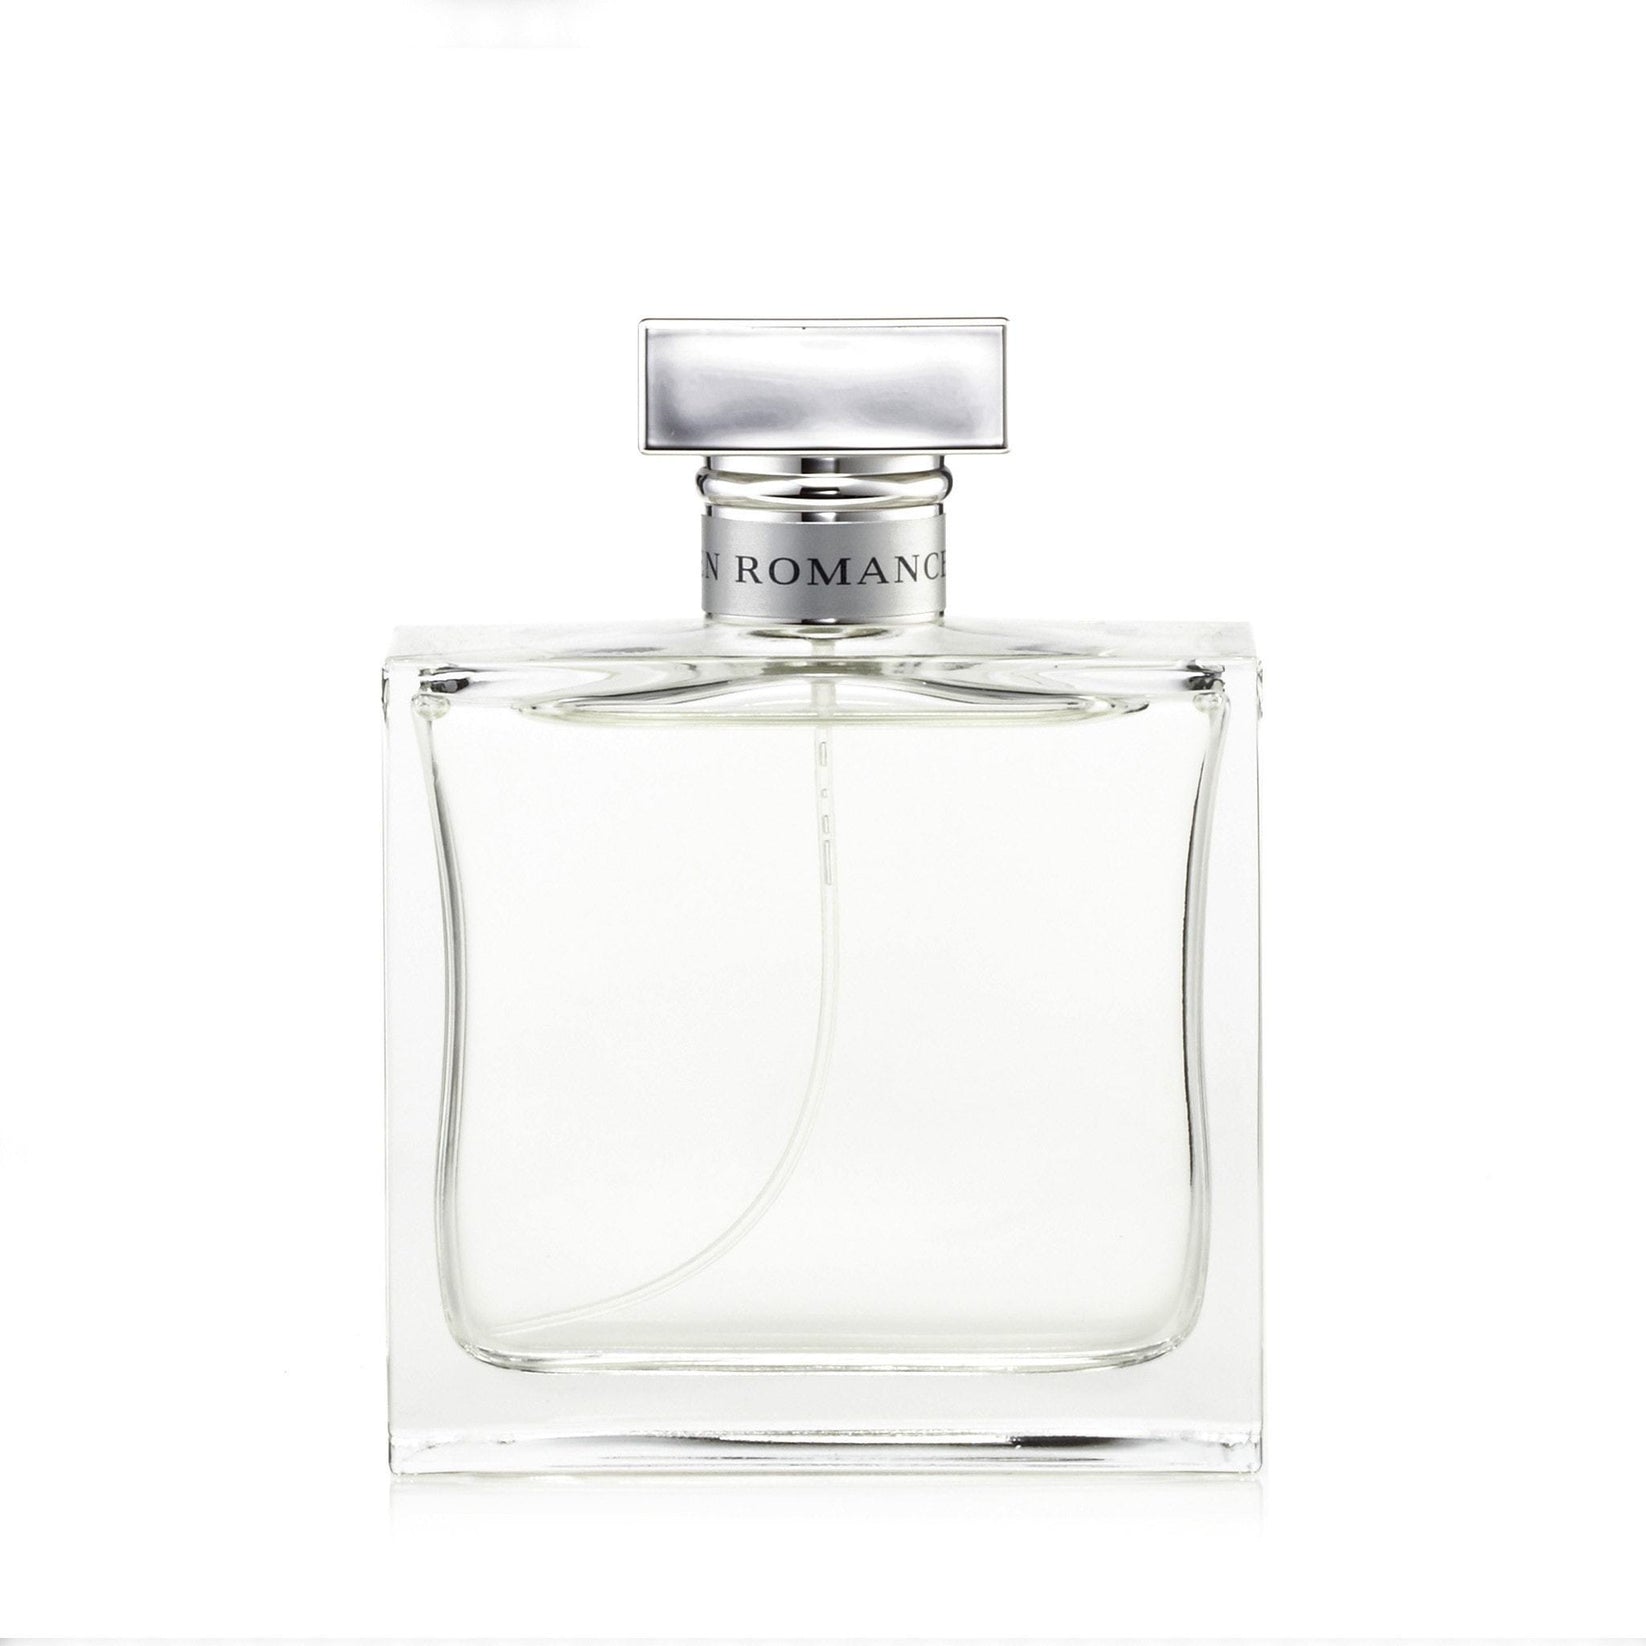 Romance Eau de Parfum Spray for Women by Ralph Lauren – Perfumania